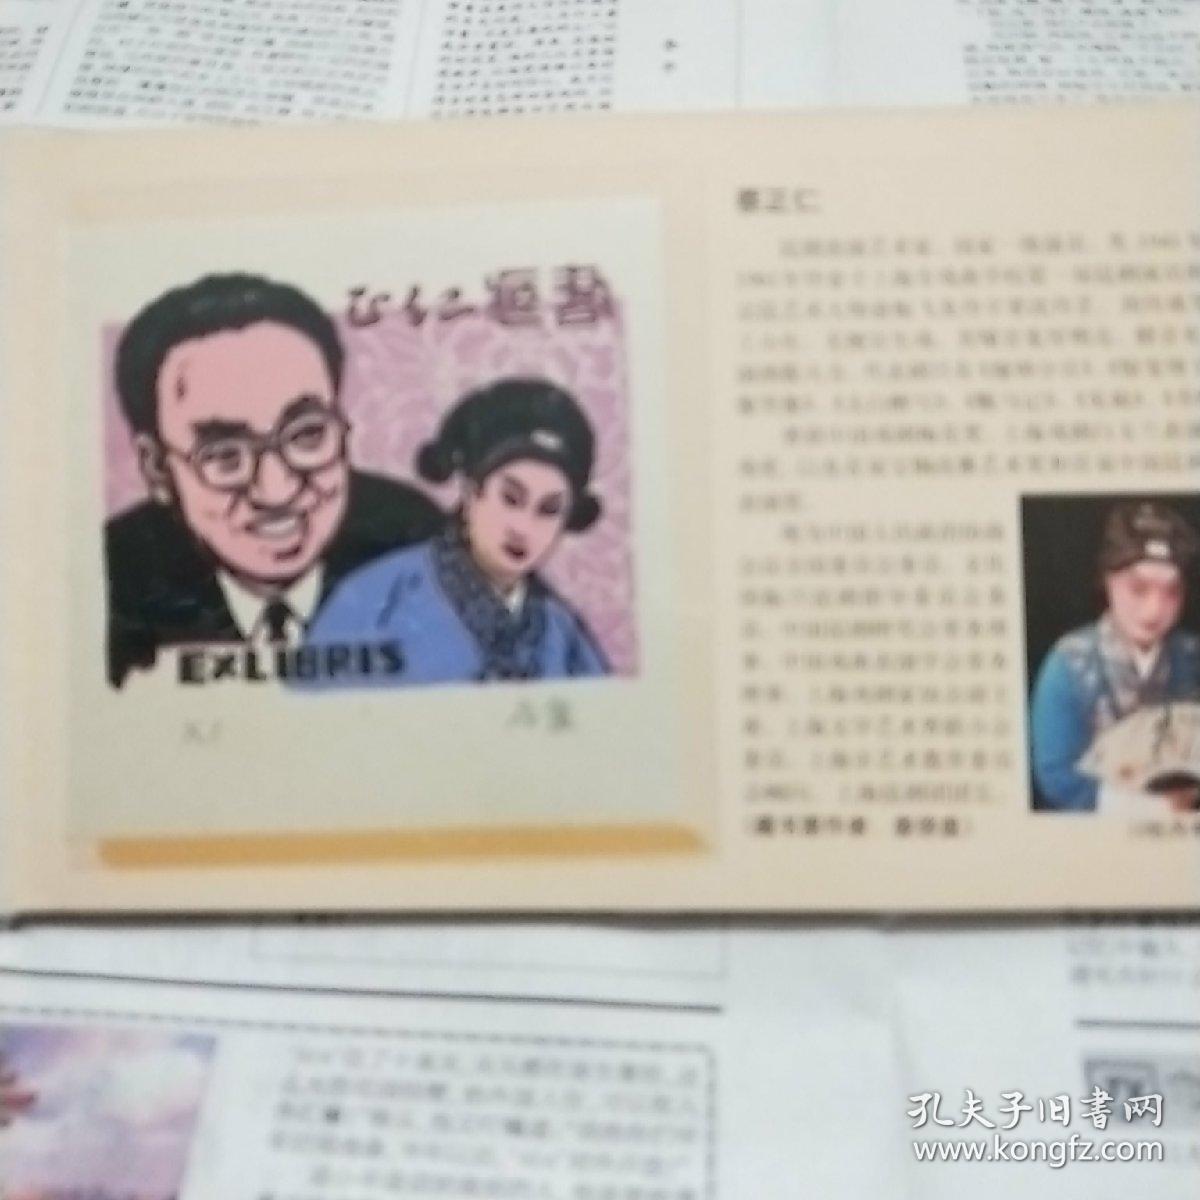 中国现代昆曲艺术家肖像藏书票